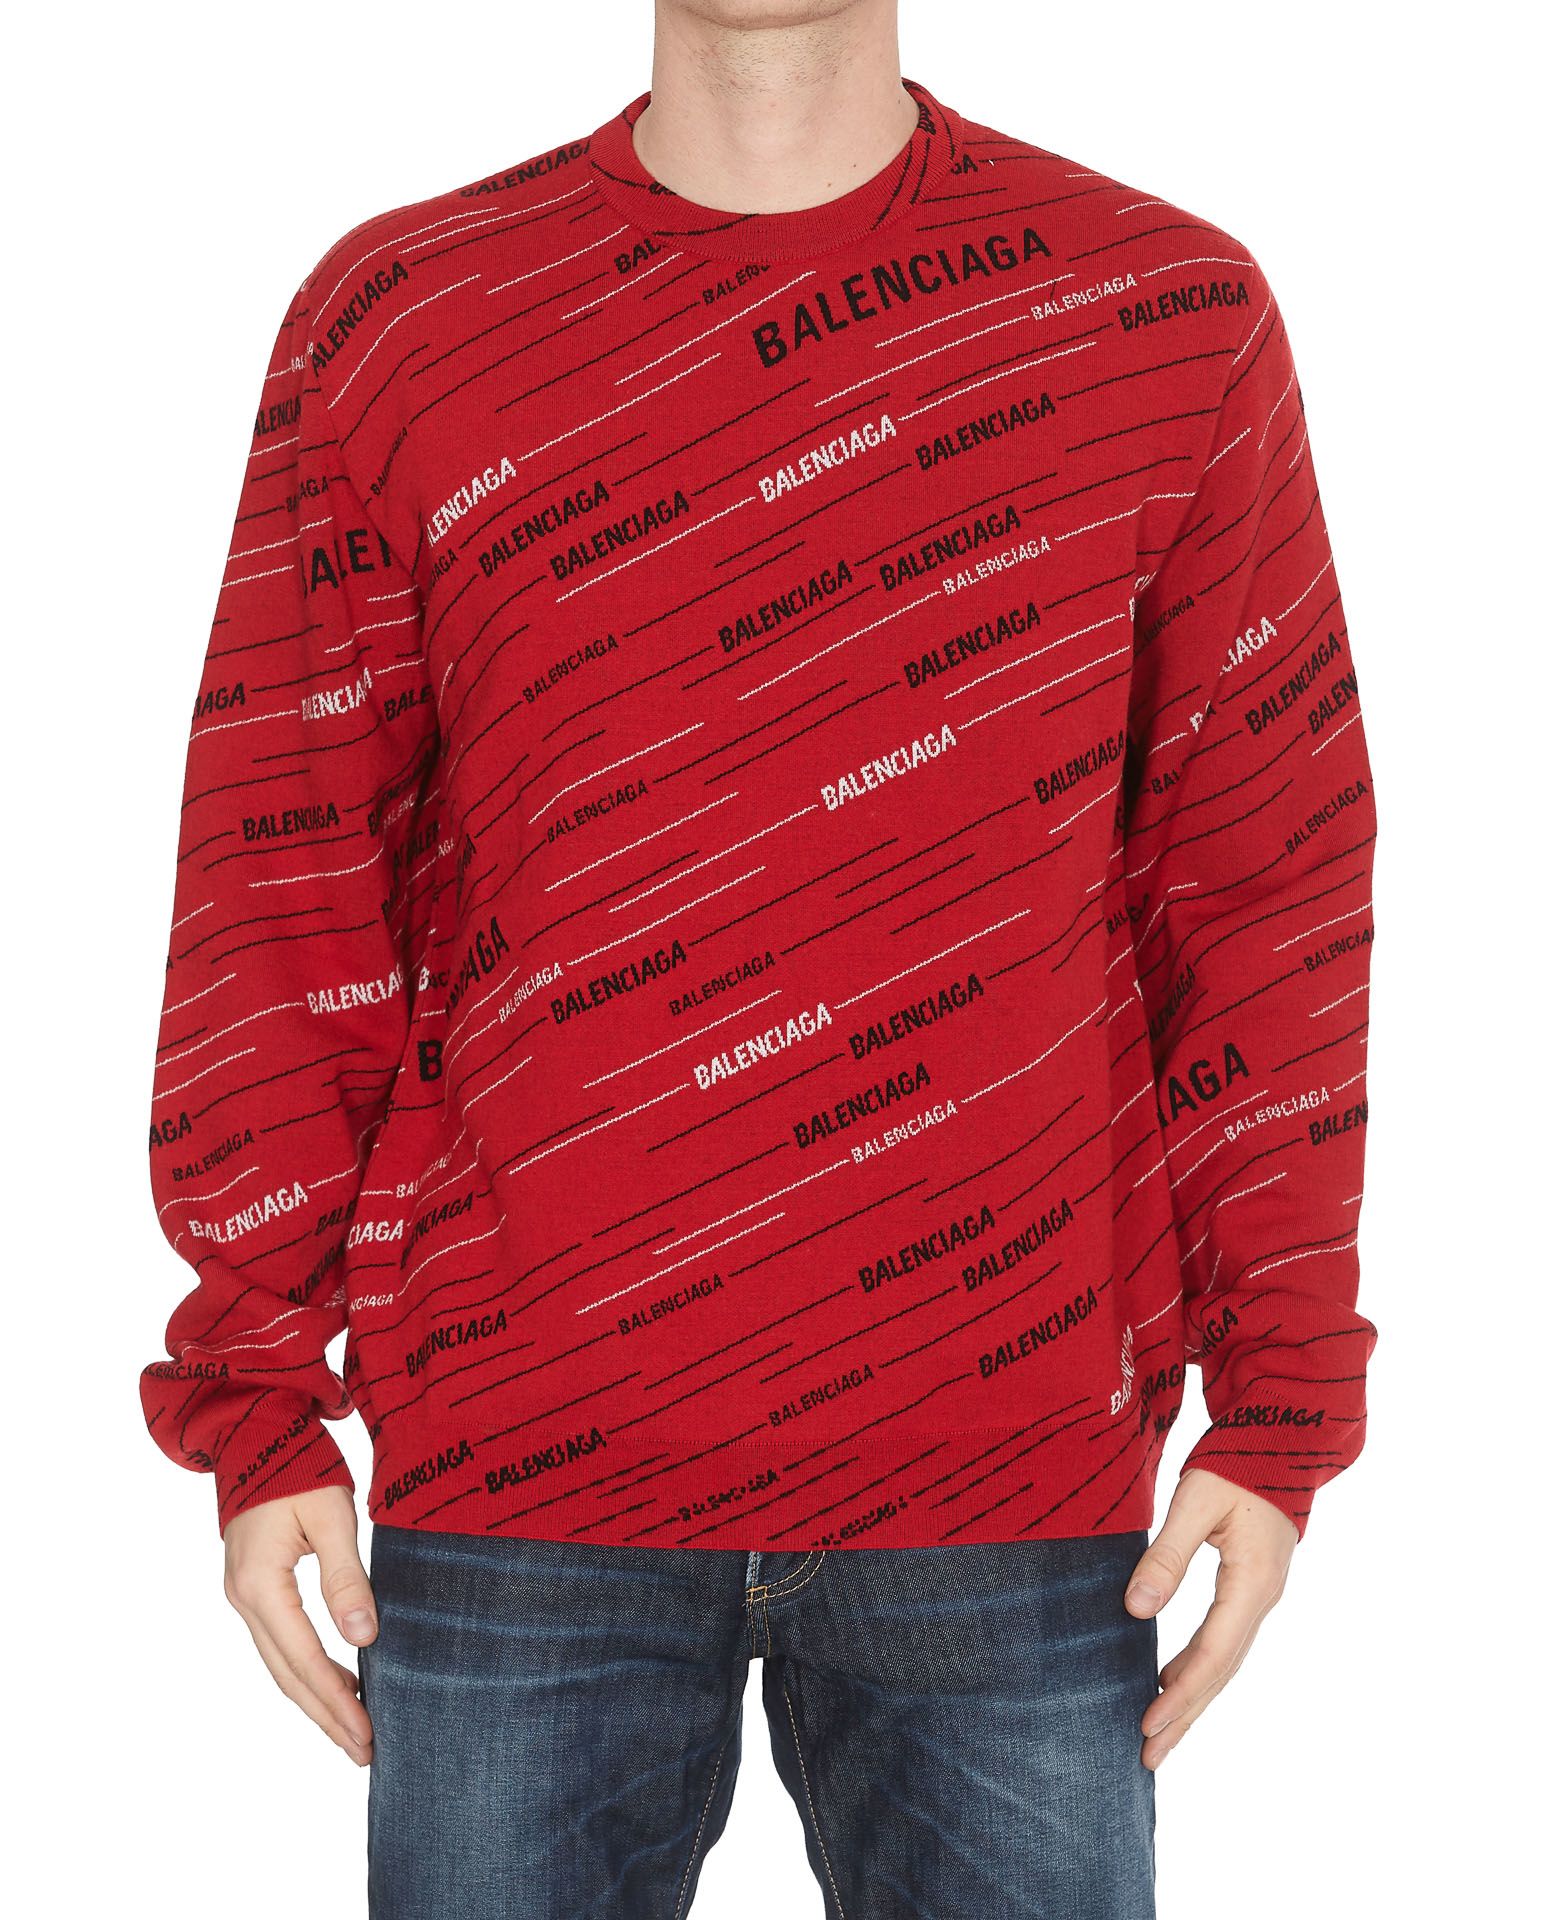 Balenciaga Balenciaga Jacquard Crew Neck Sweater - Red/black - 10960090 ...